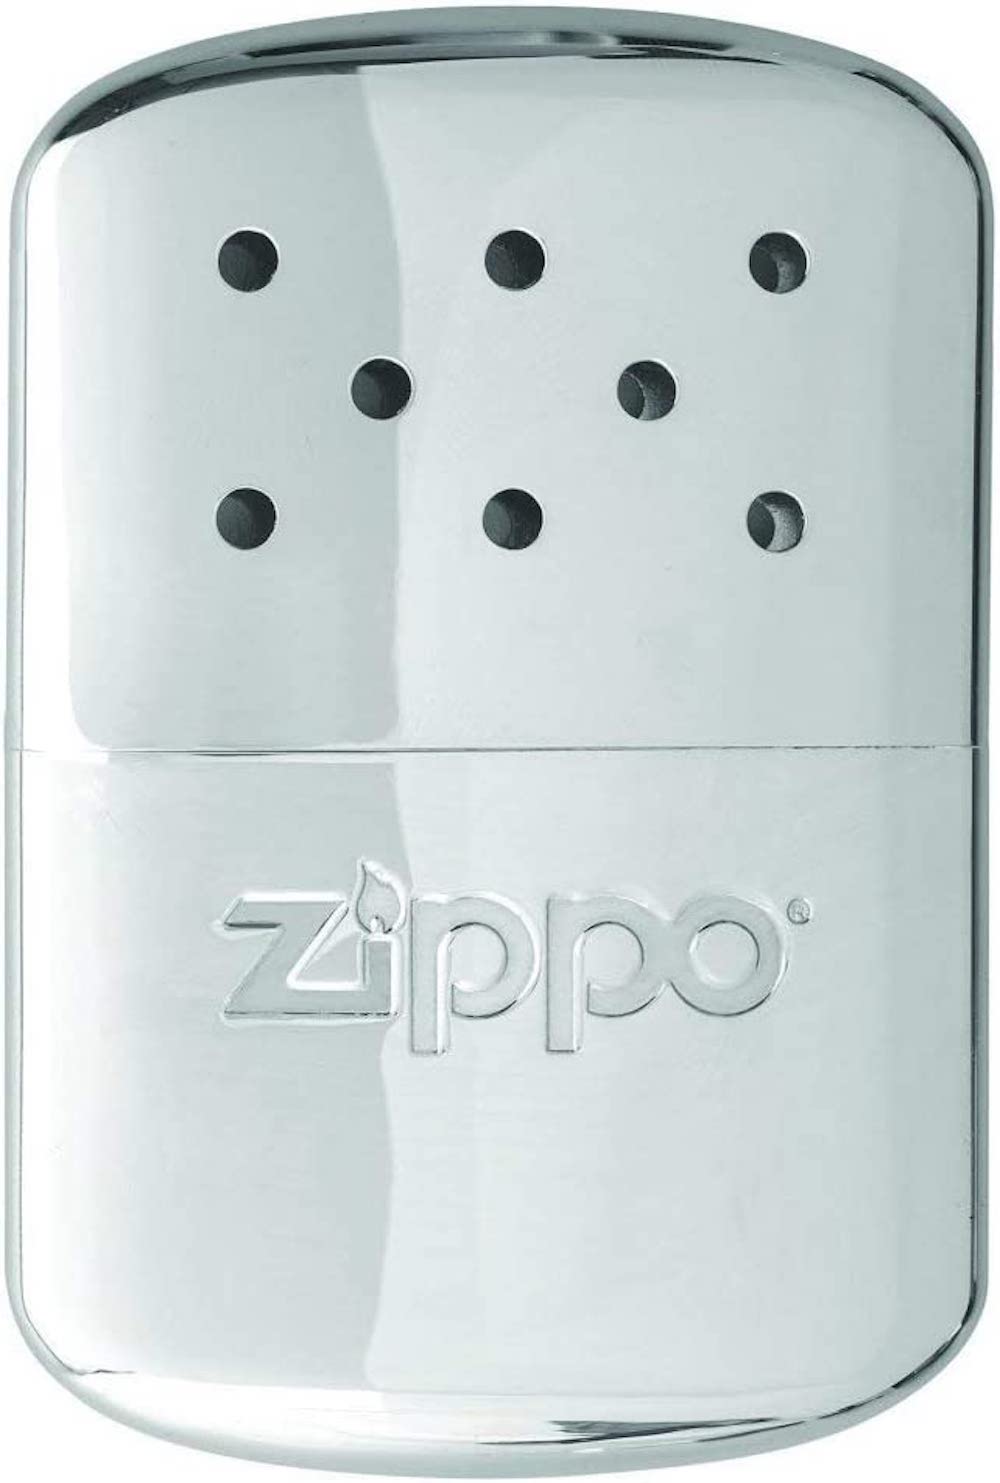 Zippo hand warmer